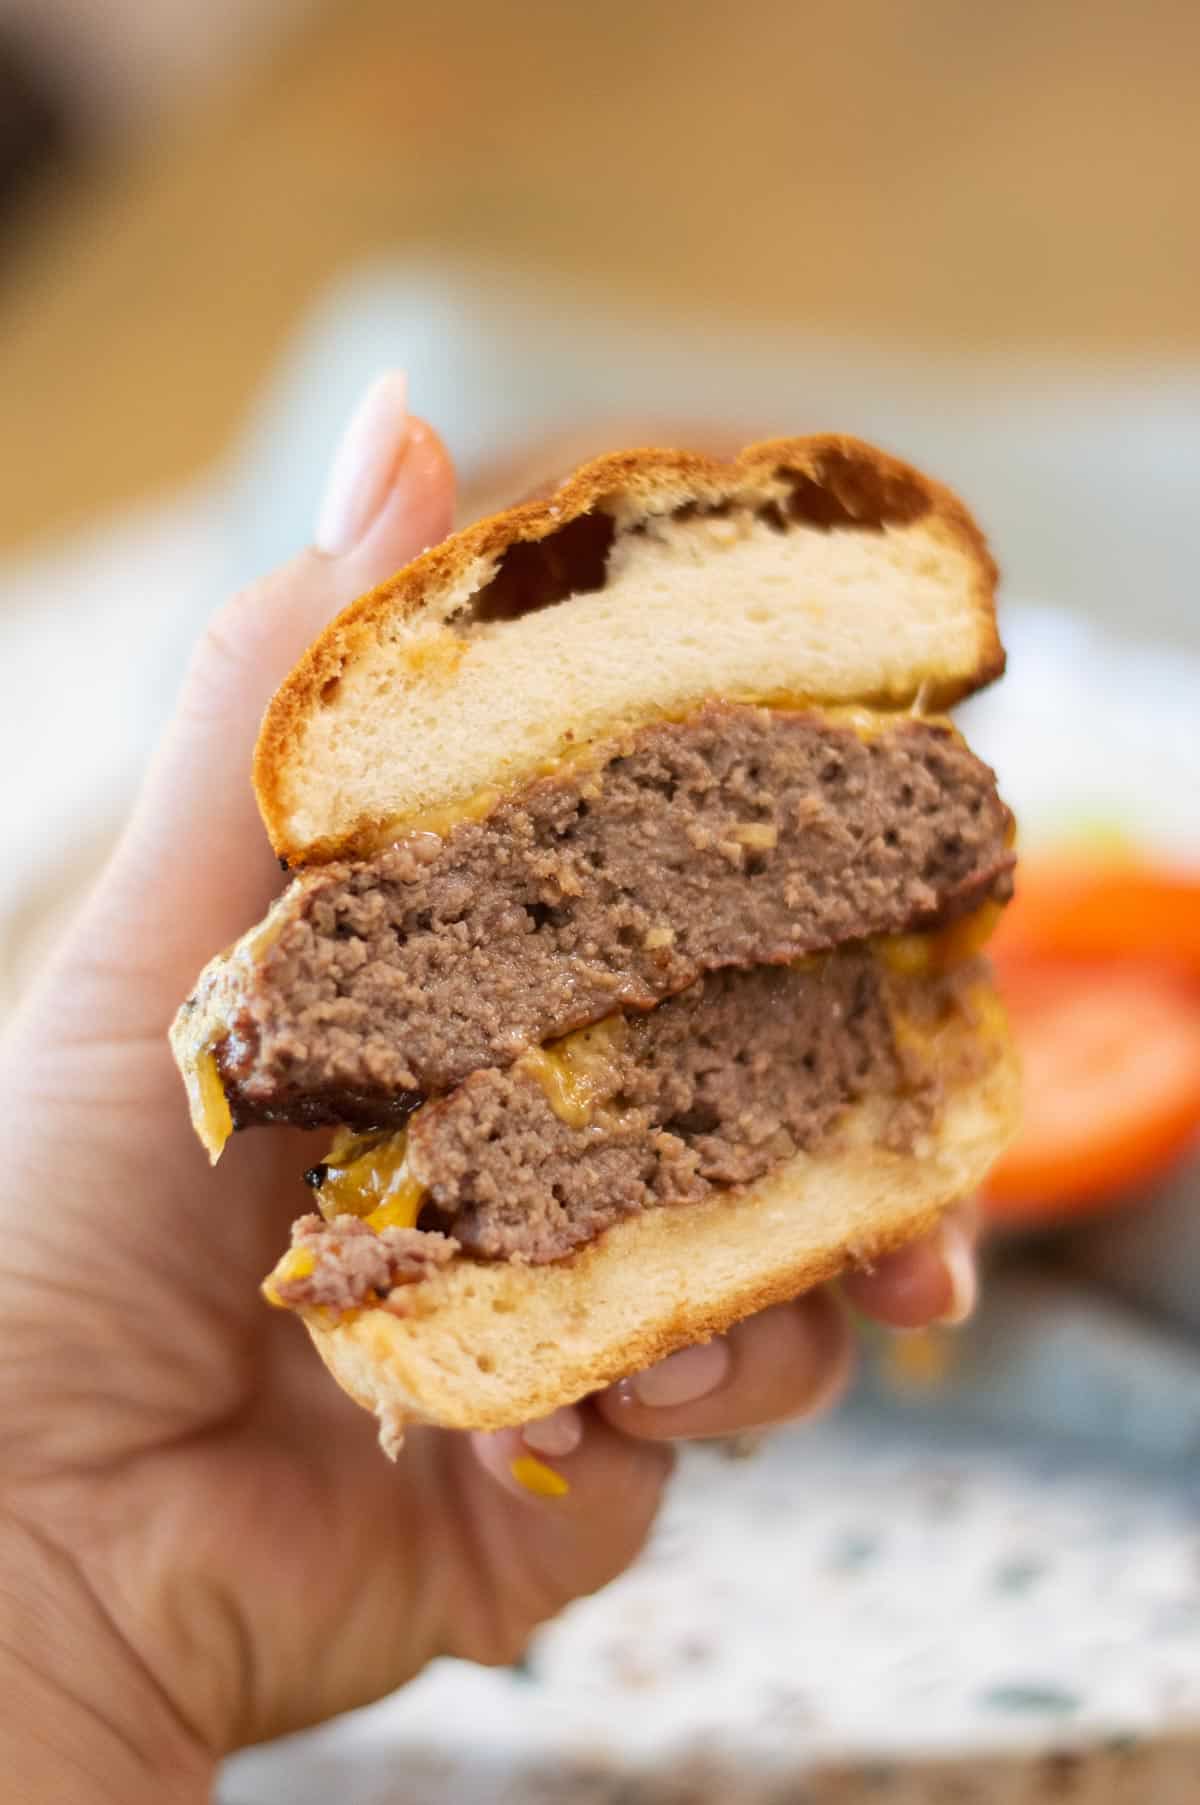 gluten-free burgers cut in half